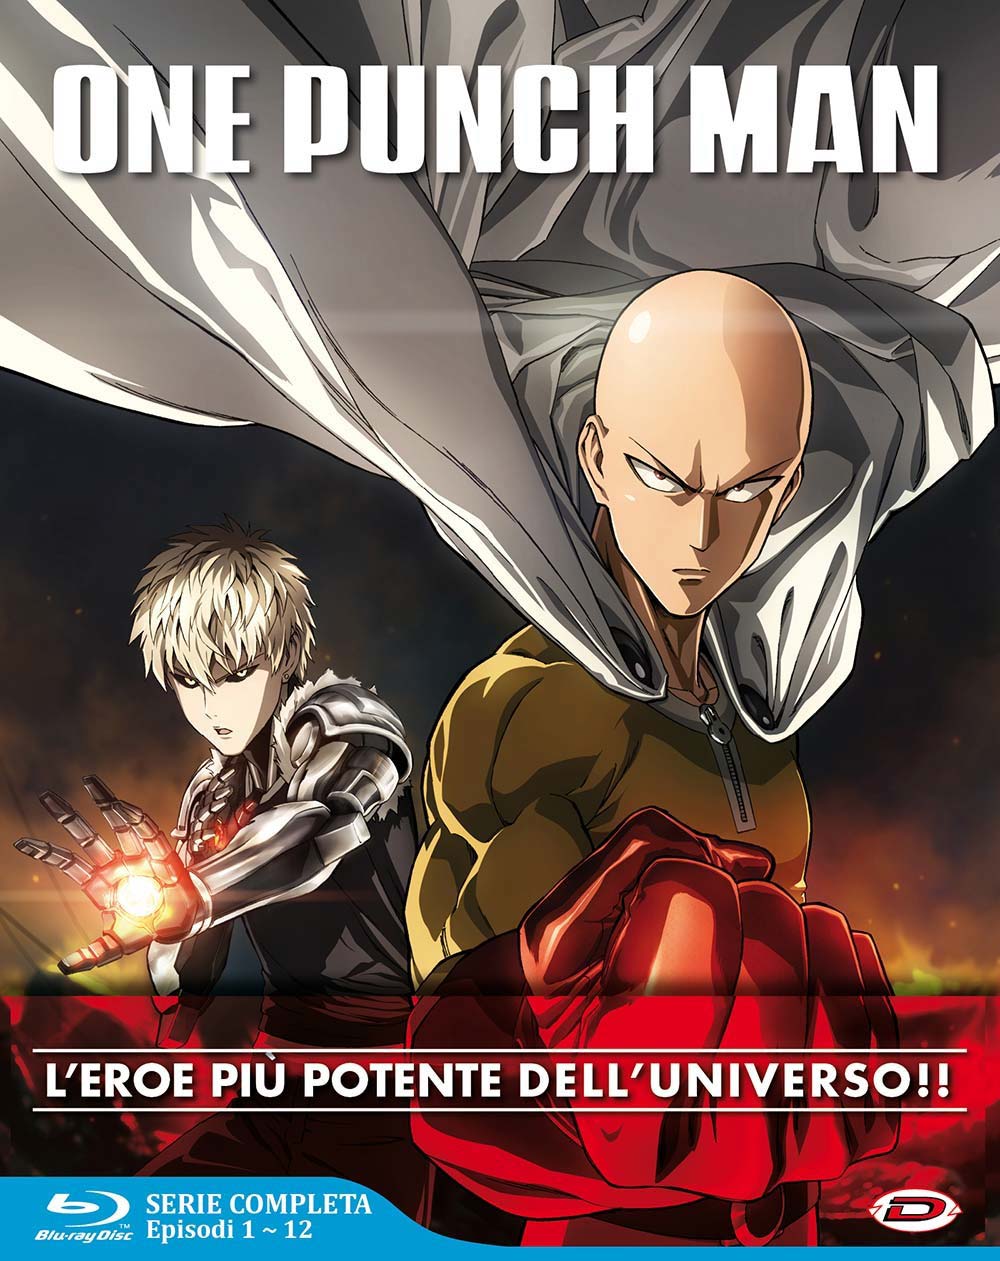 Blu-Ray One Punch Man - The Complete Series Box (Eps 01-12) (3 Blu-Ray) NUOVO SIGILLATO, EDIZIONE DEL 29/09/2021 SUBITO DISPONIBILE